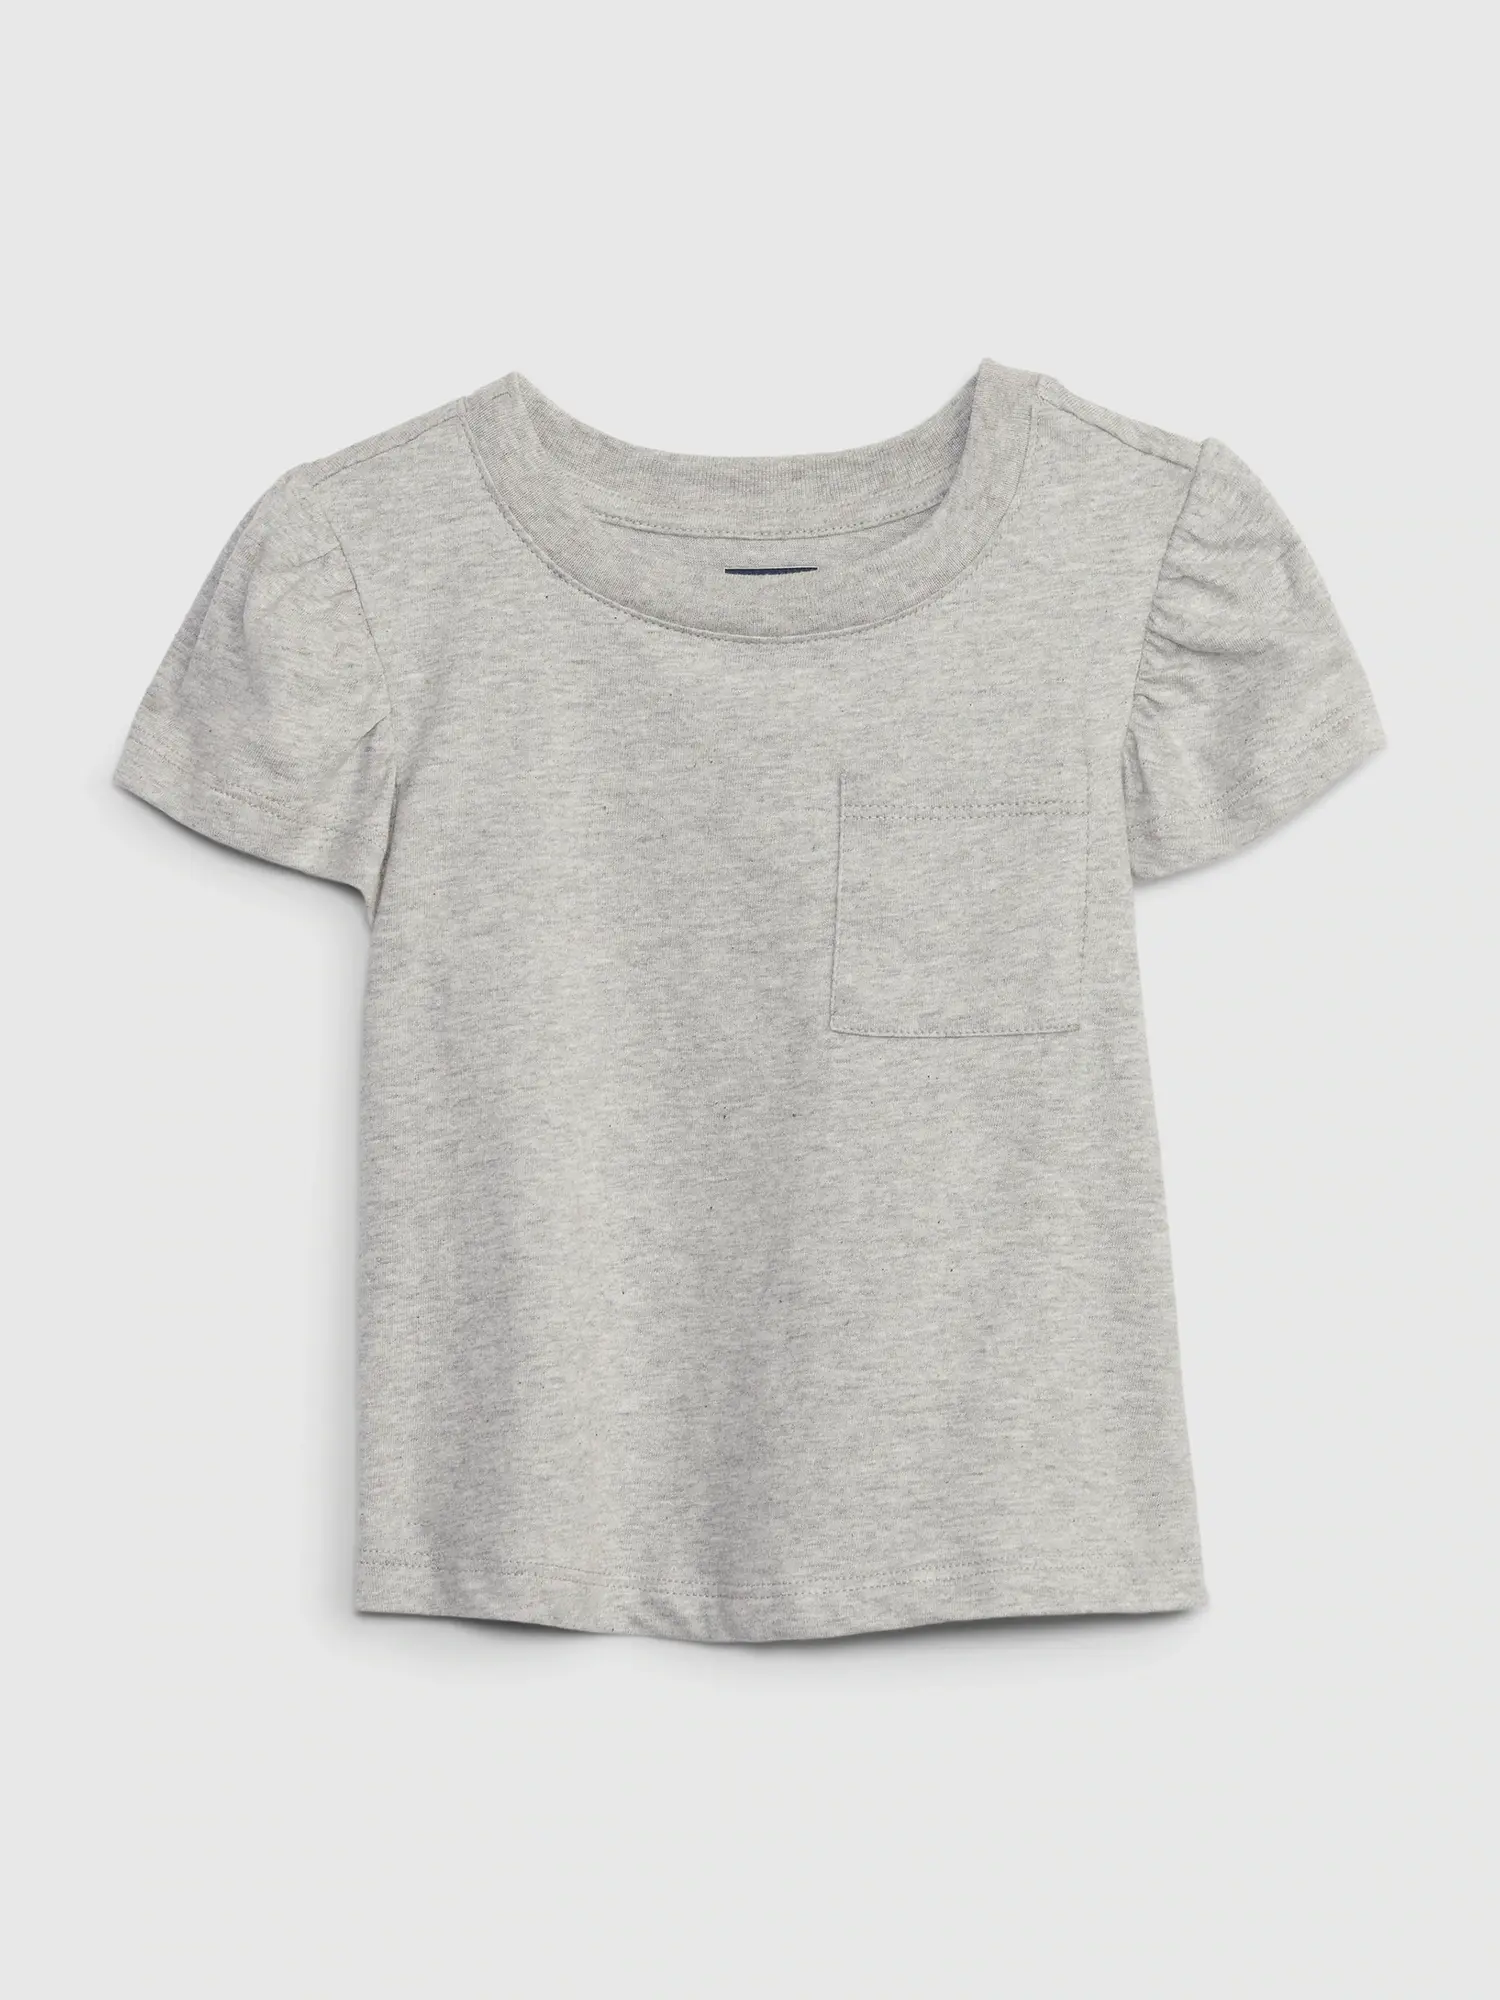 Gap Toddler Organic Cotton Mix and Match T-Shirt gray. 1